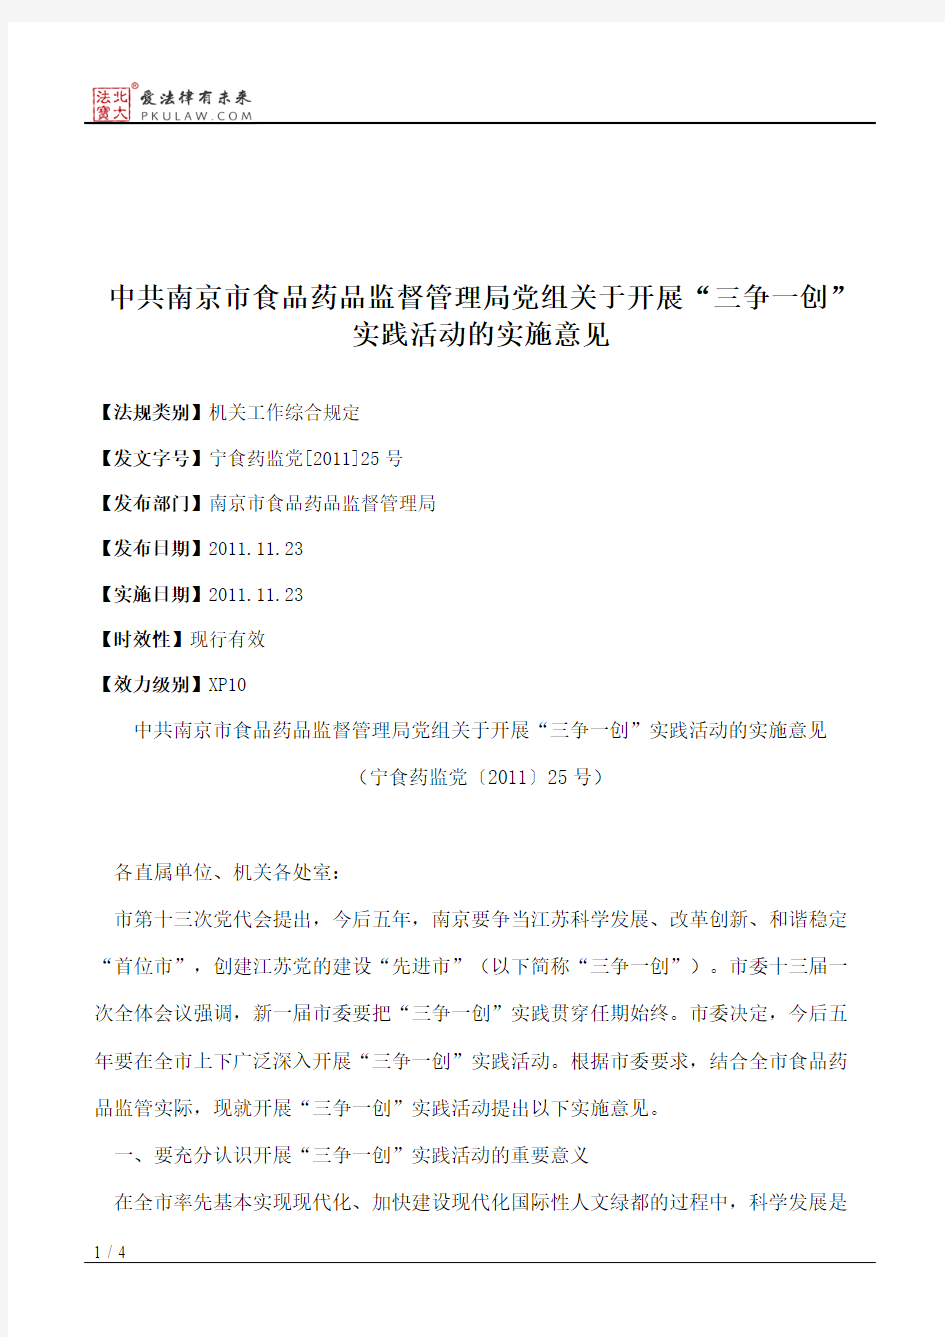 中共南京市食品药品监督管理局党组关于开展“三争一创”实践活动